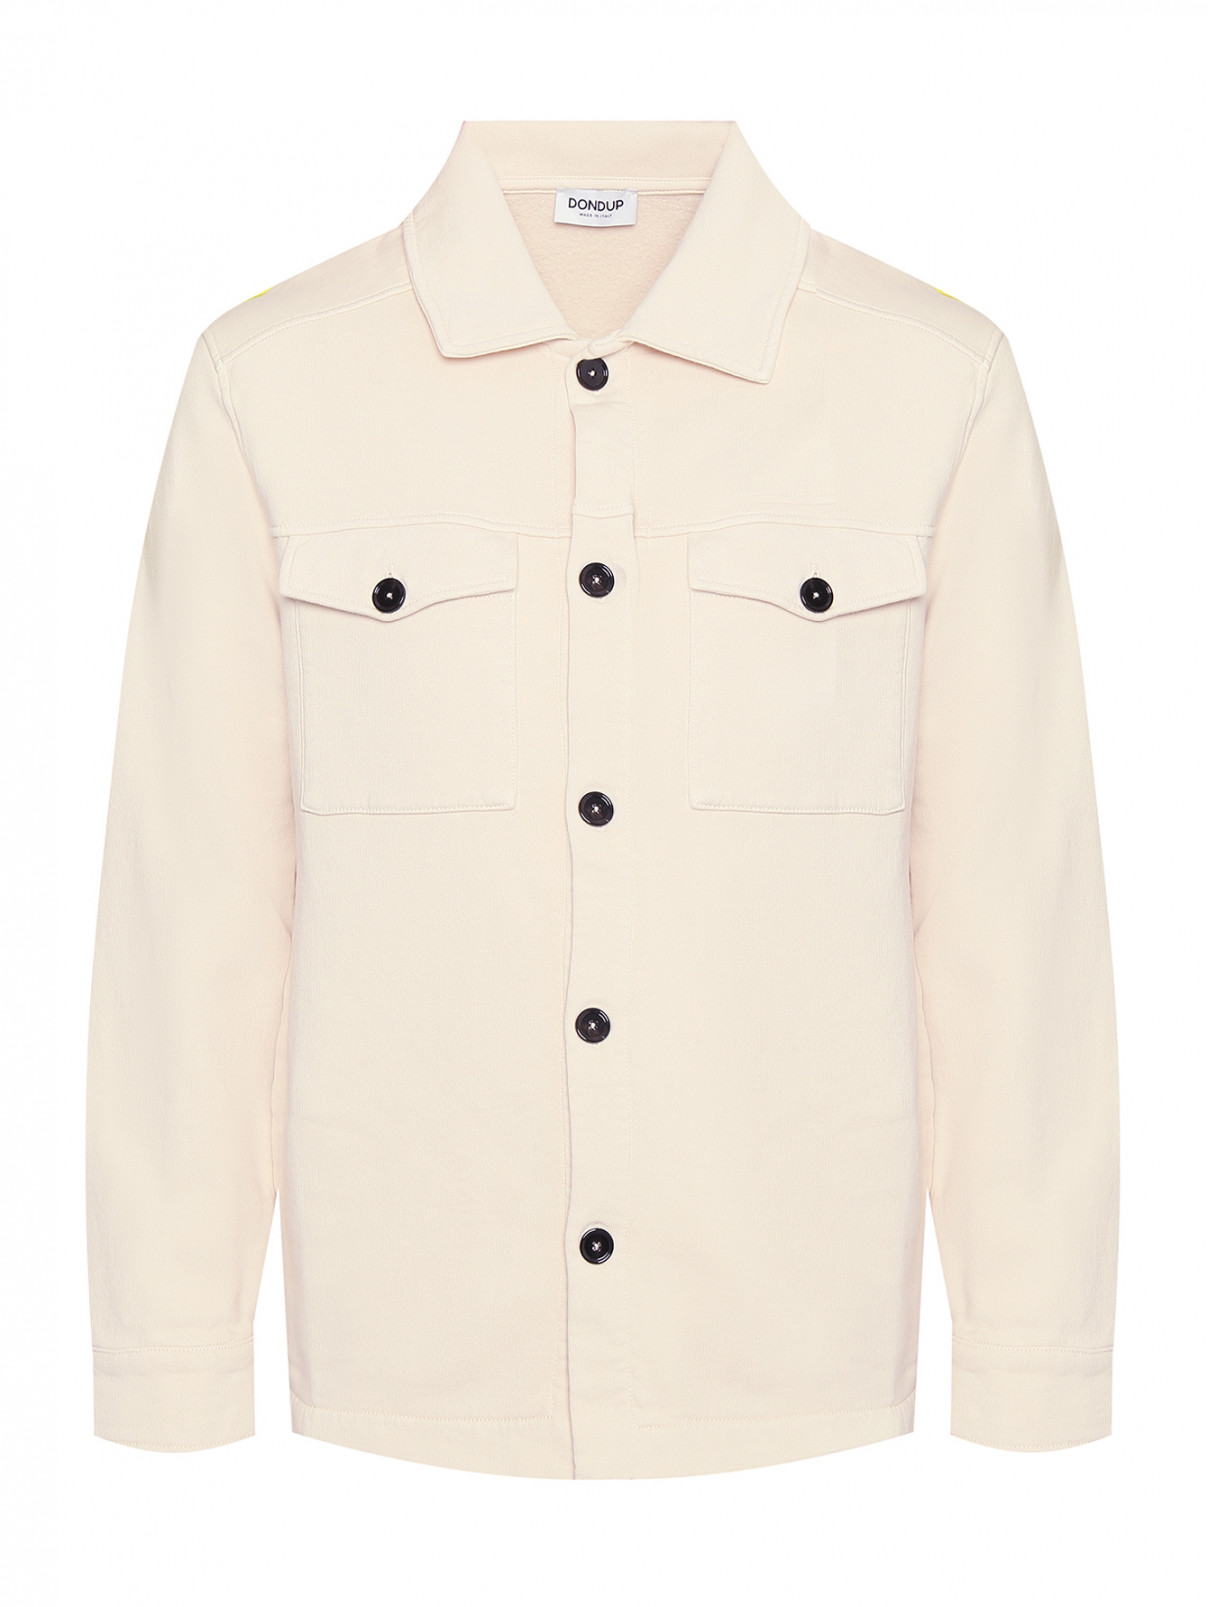 Однотонная куртка из хлопка с карманами Dondup  –  Общий вид  – Цвет:  Бежевый